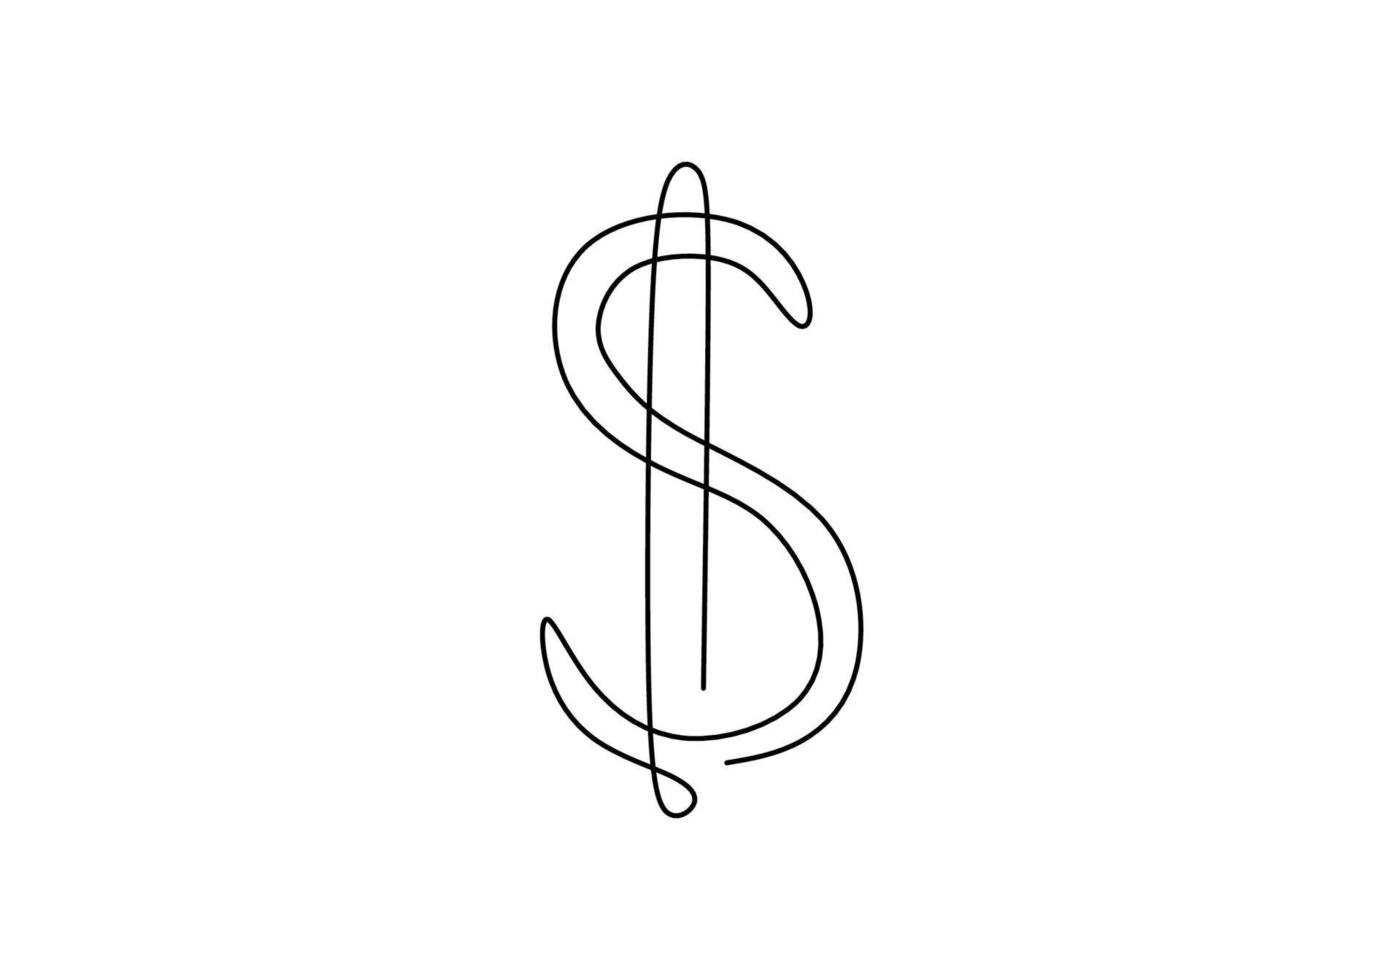 kontinuerlig en linje ritning av dollartecken isolerad på vit bakgrund. dollar pengar symbol med klotter handritad skiss konturteckningar. minimalism design. begreppet pengar lagring, pengar, ekonomi vektor